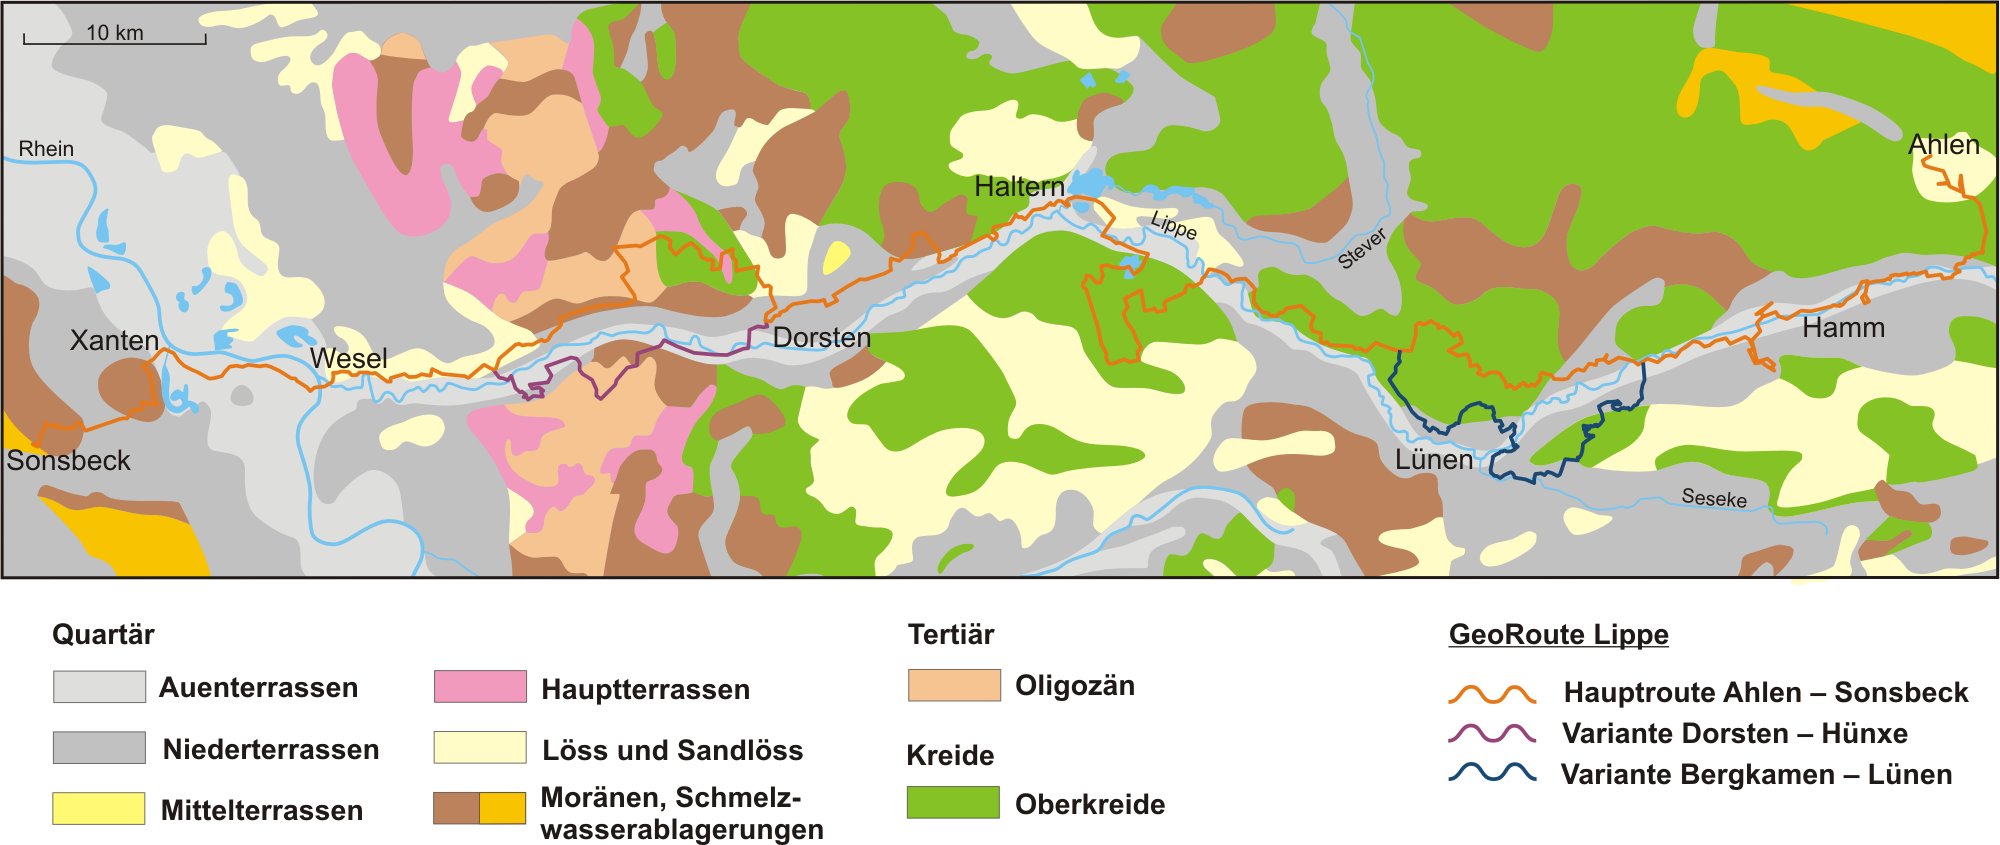 Vereinfachte geologische Karte und Streckenverlauf der GeoRoute Lippe